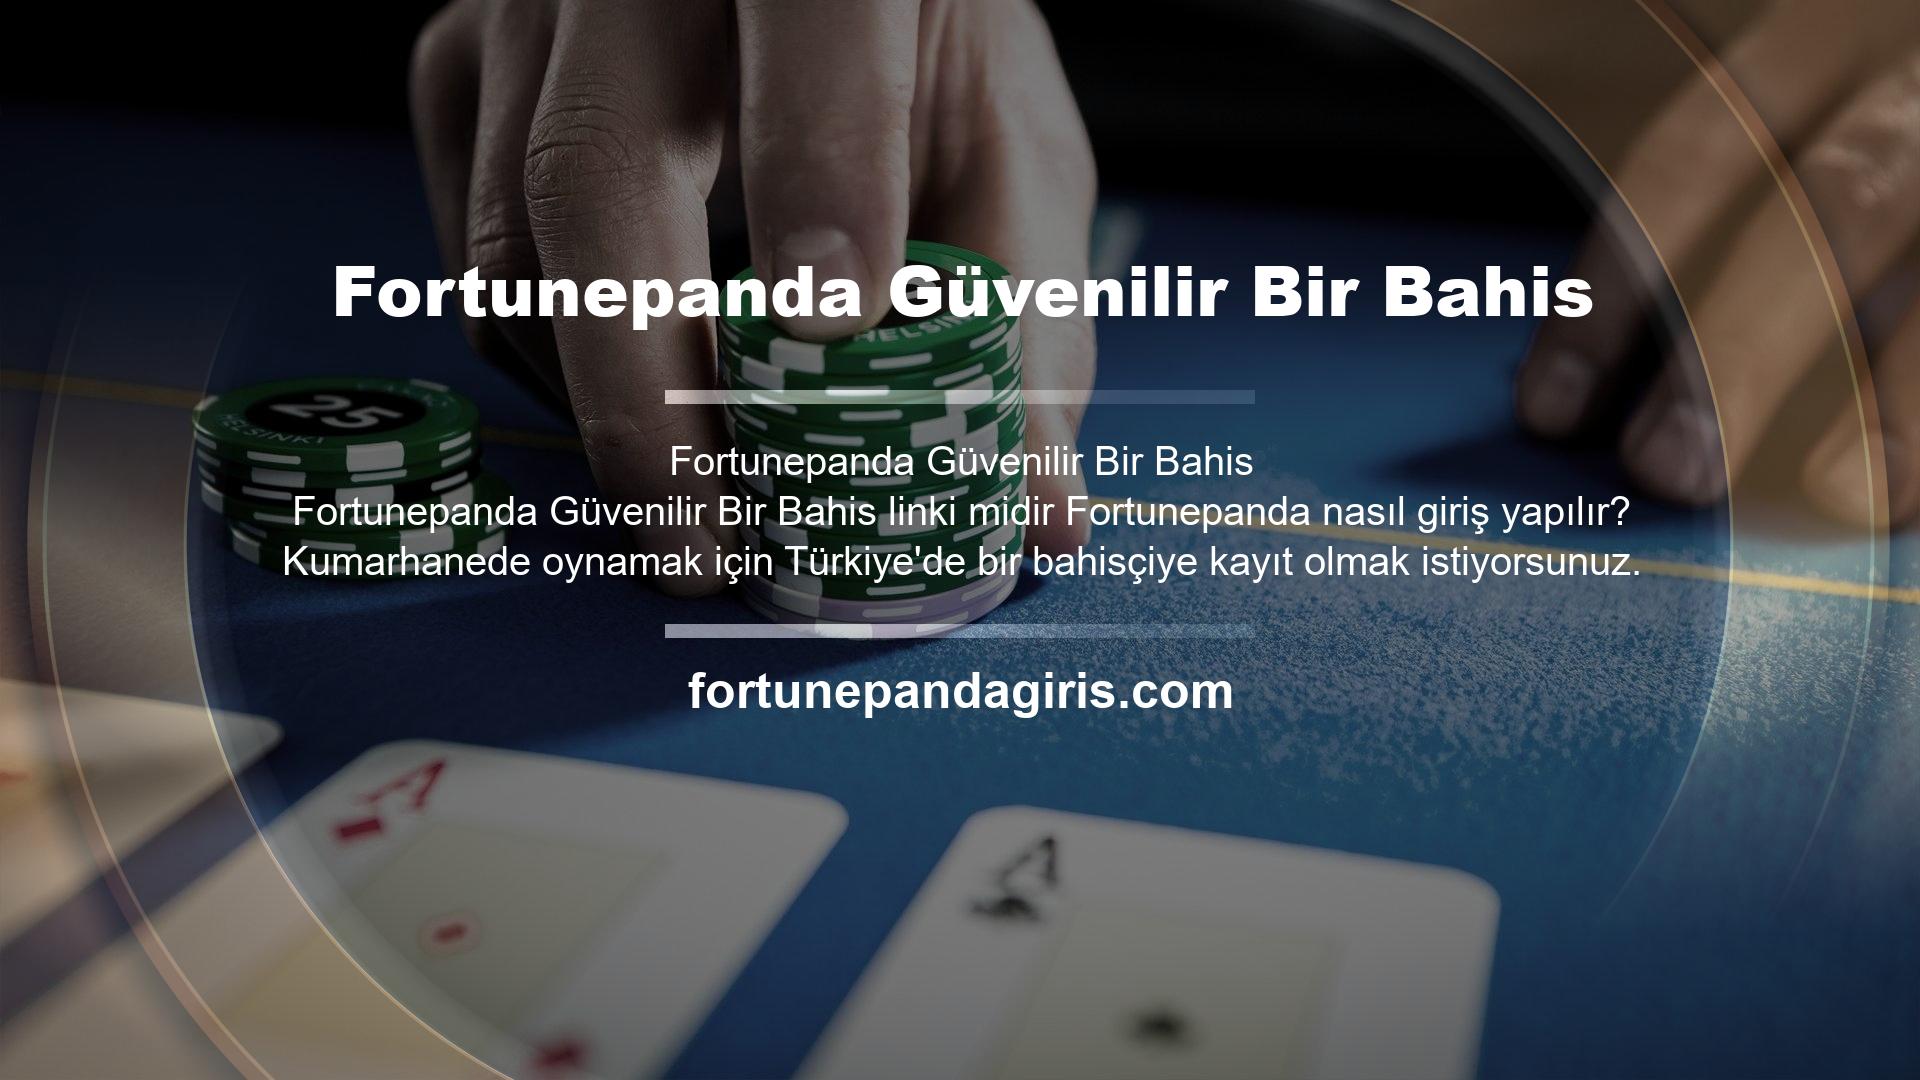 Fortunepanda blackjack oynayarak çok para kazanabilirsiniz